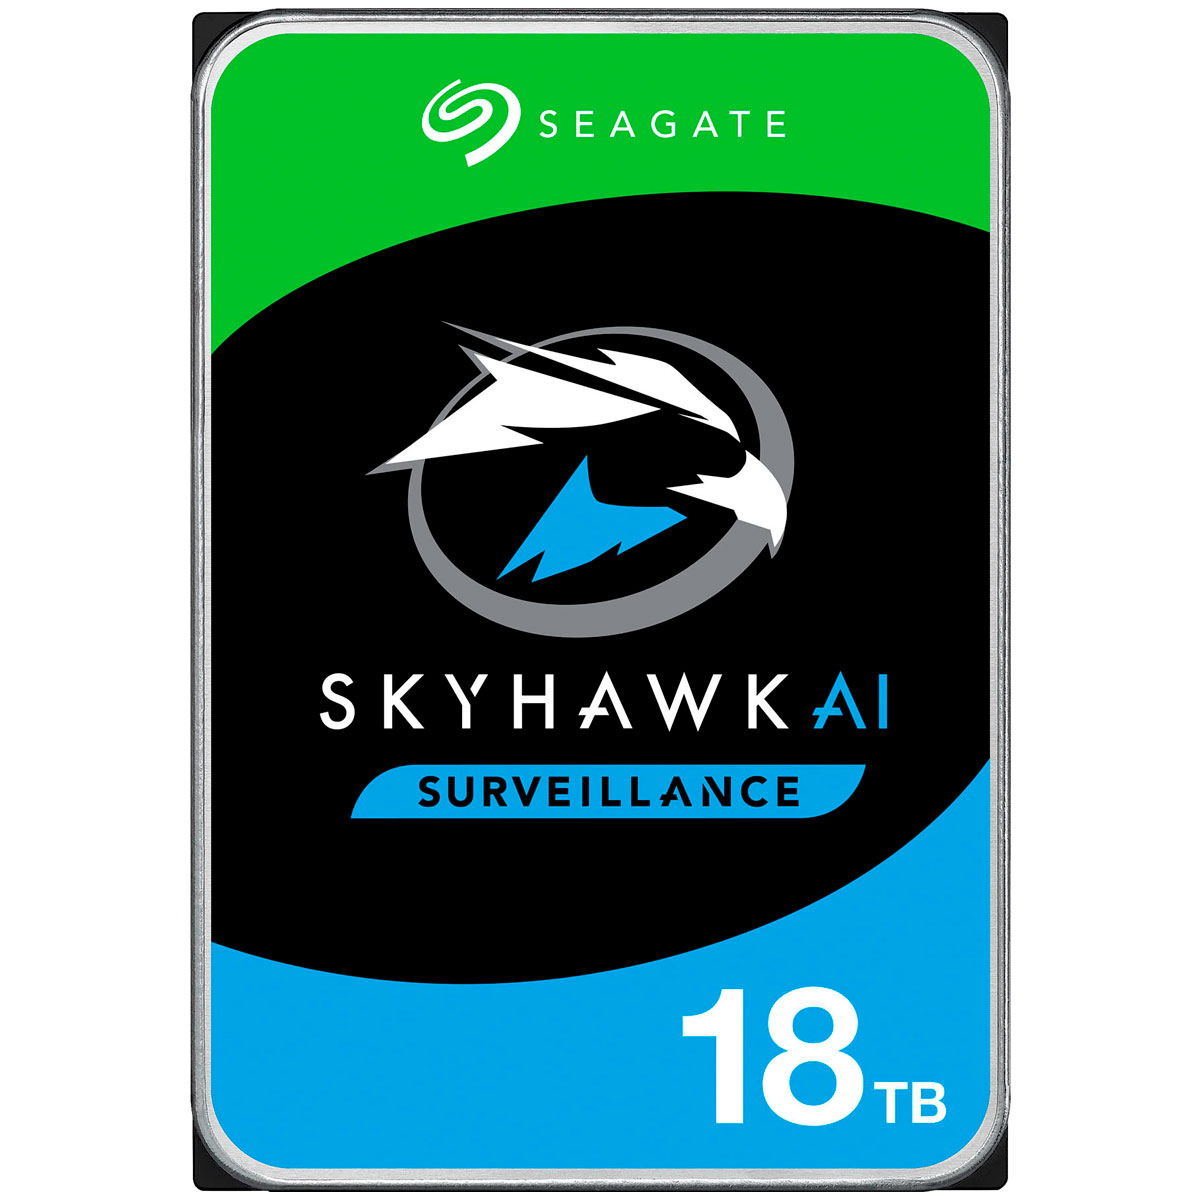 HD 18TB SATA - 7200RPM - 256MB Cache - Seagate SkyHawk AI Surveillance - ST18000VE002 - Ideal para Vigilância